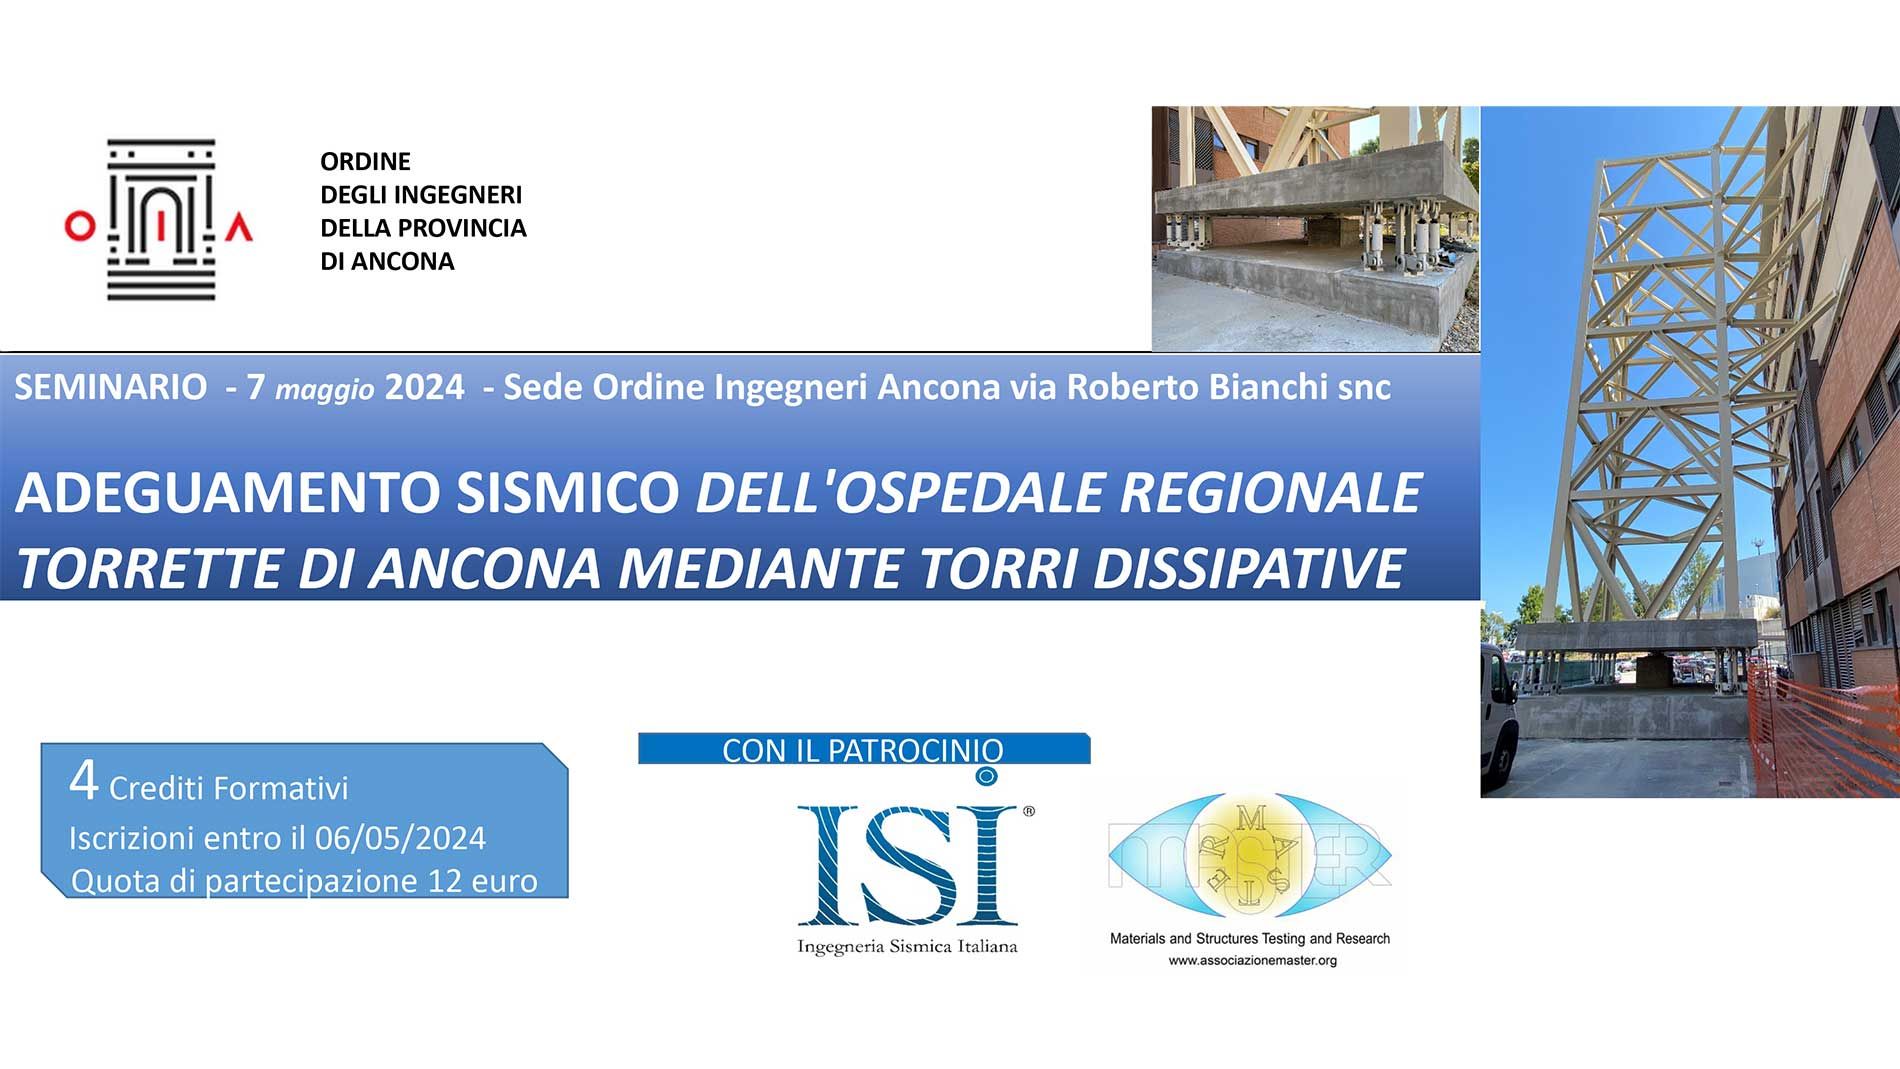 Seminario - Adeguamento sismico dell'ospedale regionale Torrette di Ancona mediante torri dissipative